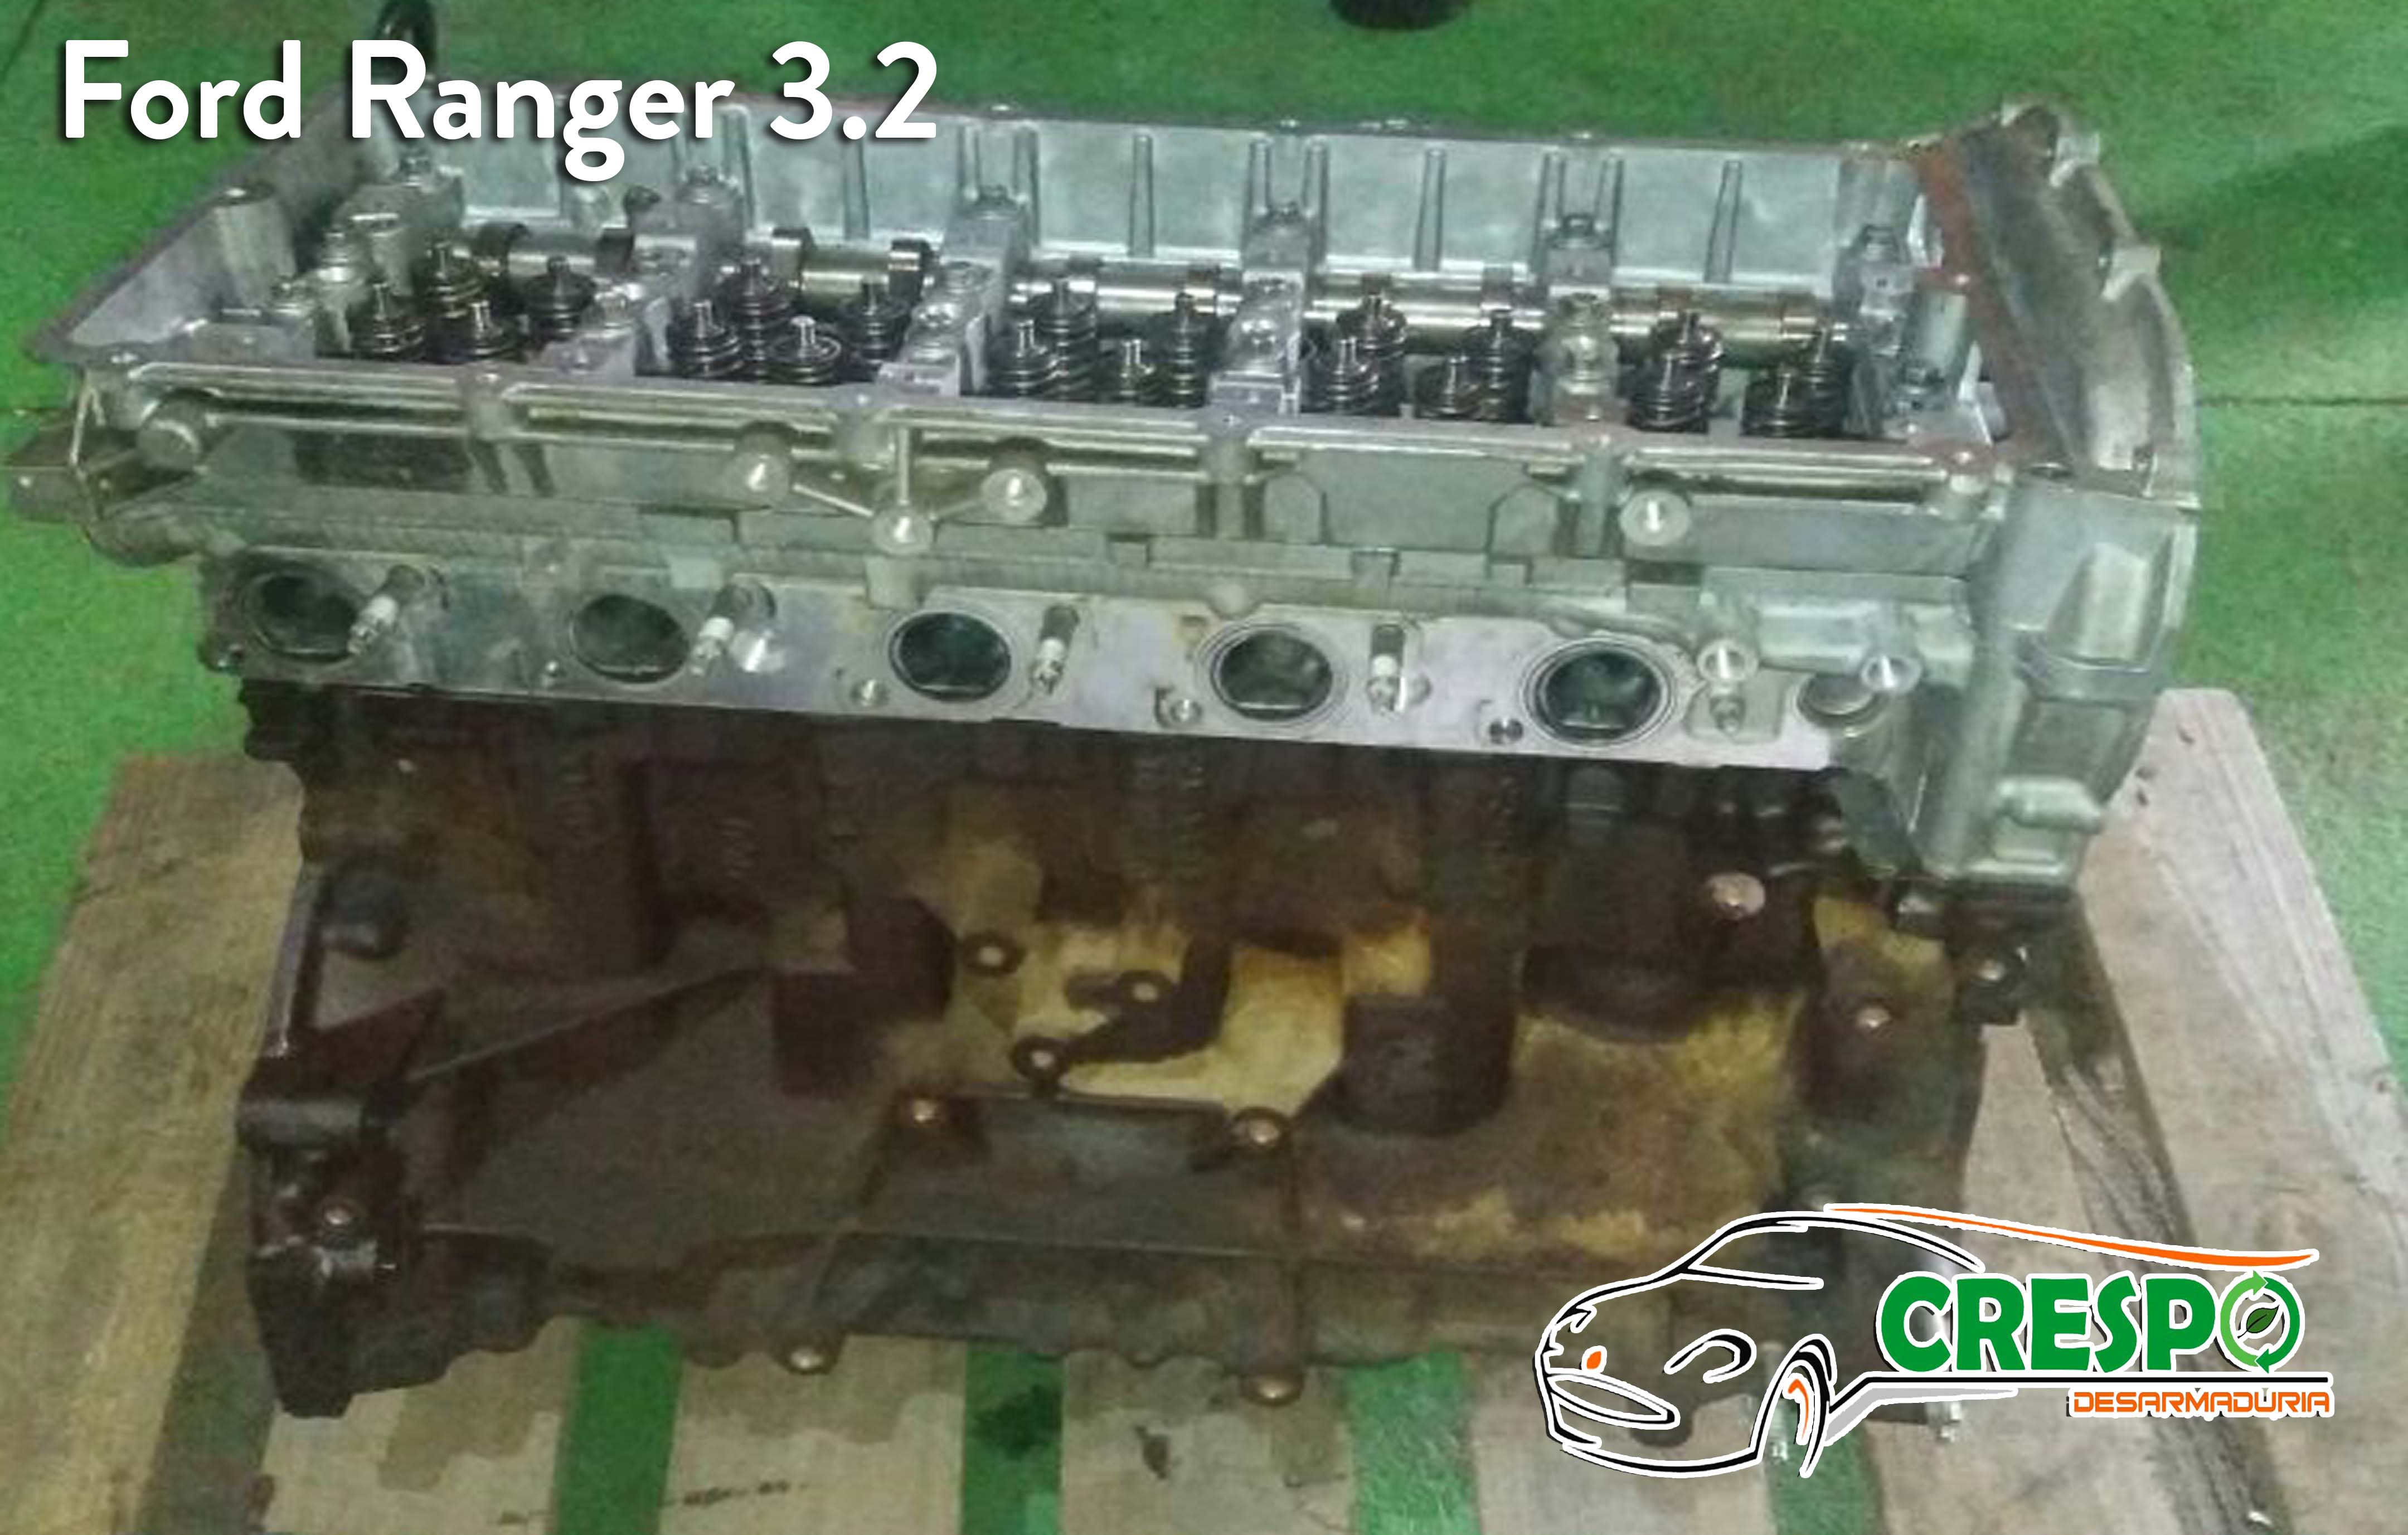 motores ford ranger 3.2 - Desarmaduría Crespo